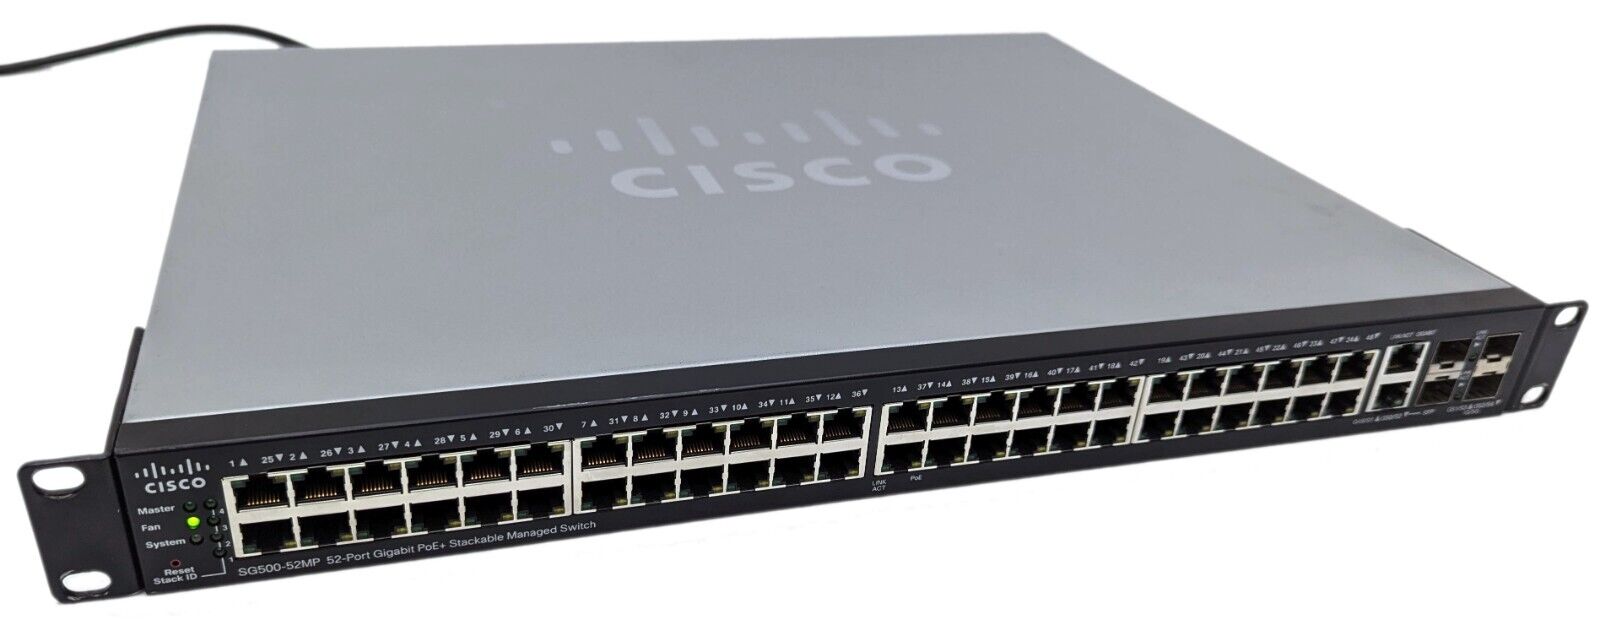 Cisco SG500-52MP 52-Port Gigabit PoE+ Managed Stackable Switch SG500-52MP-K9 V03